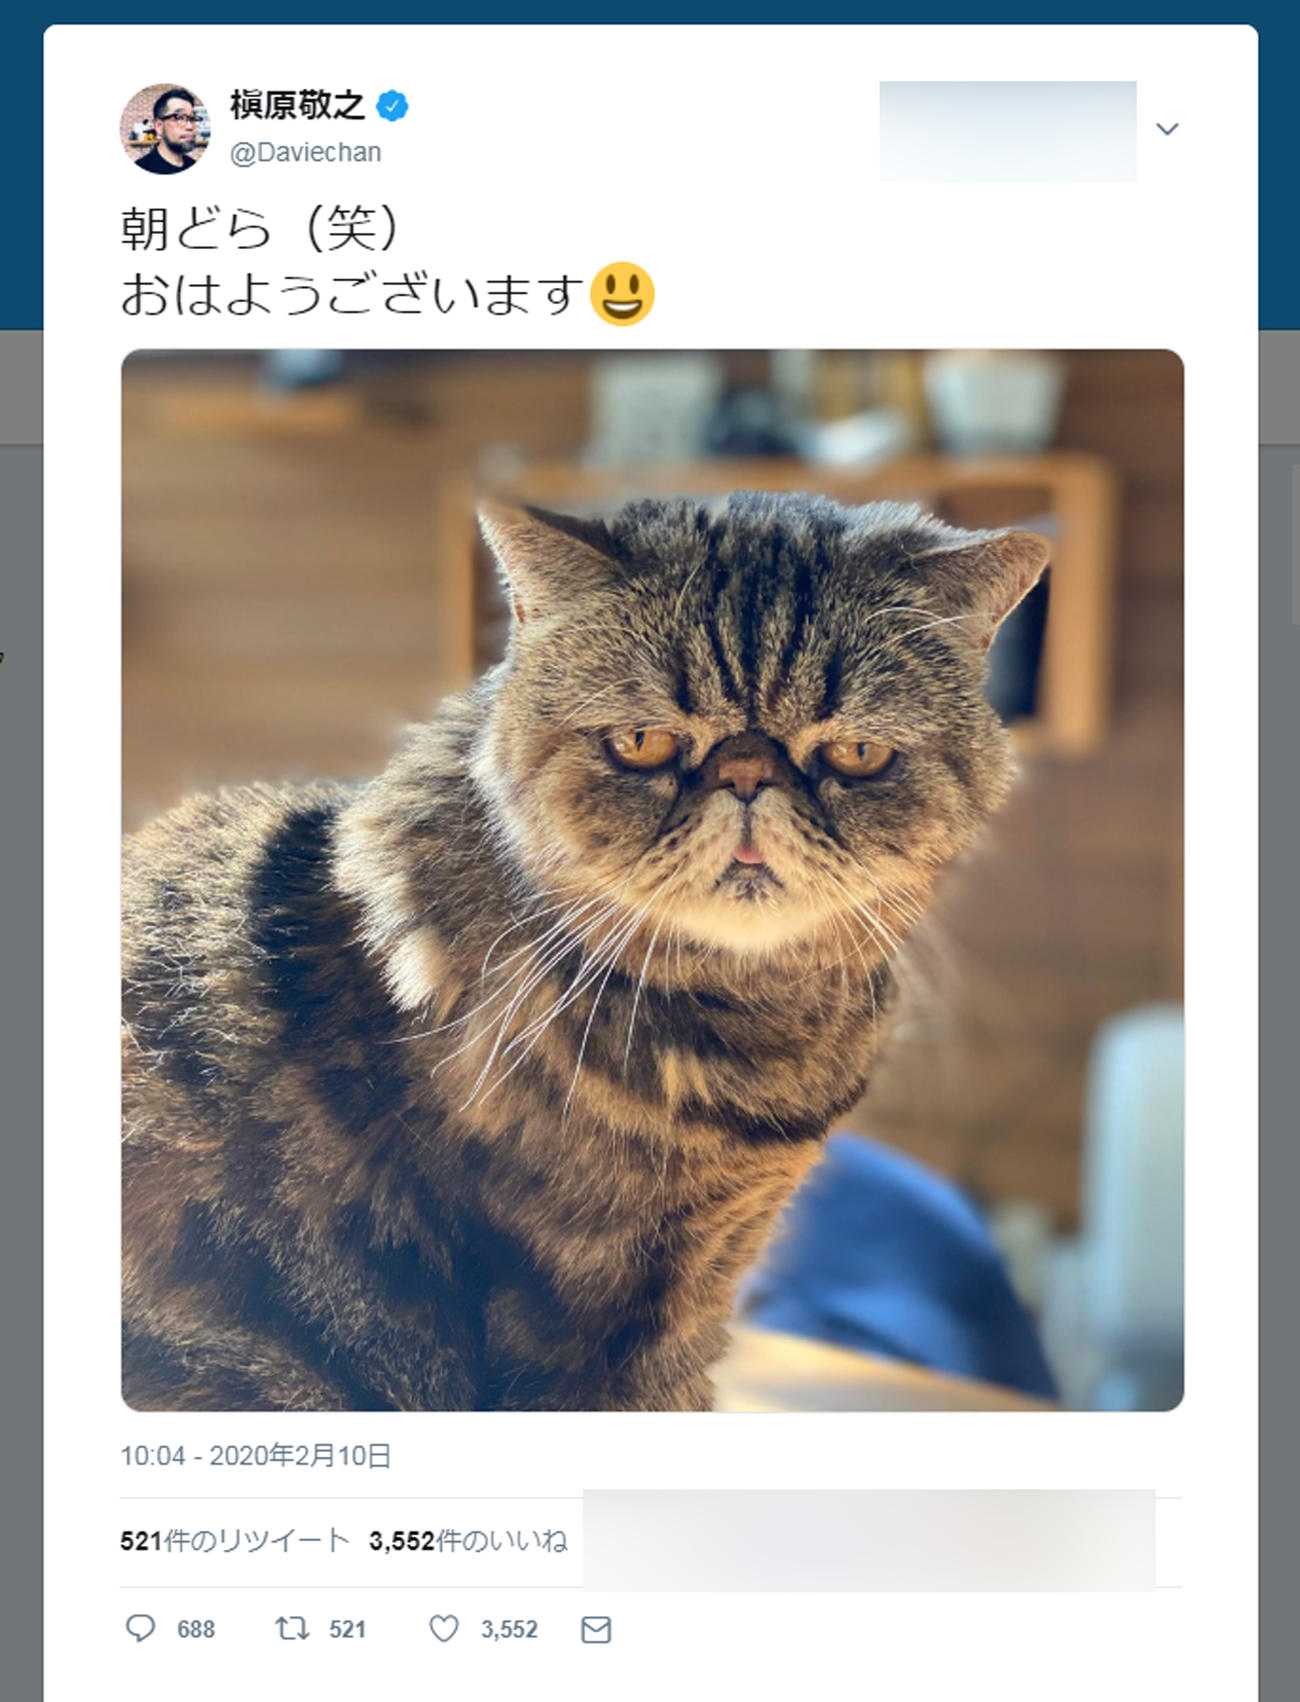 槇原敬之ツイッターの最新投稿は２月９日。猫の写真をアップし、「朝どら（笑）　おはようございます」と記している